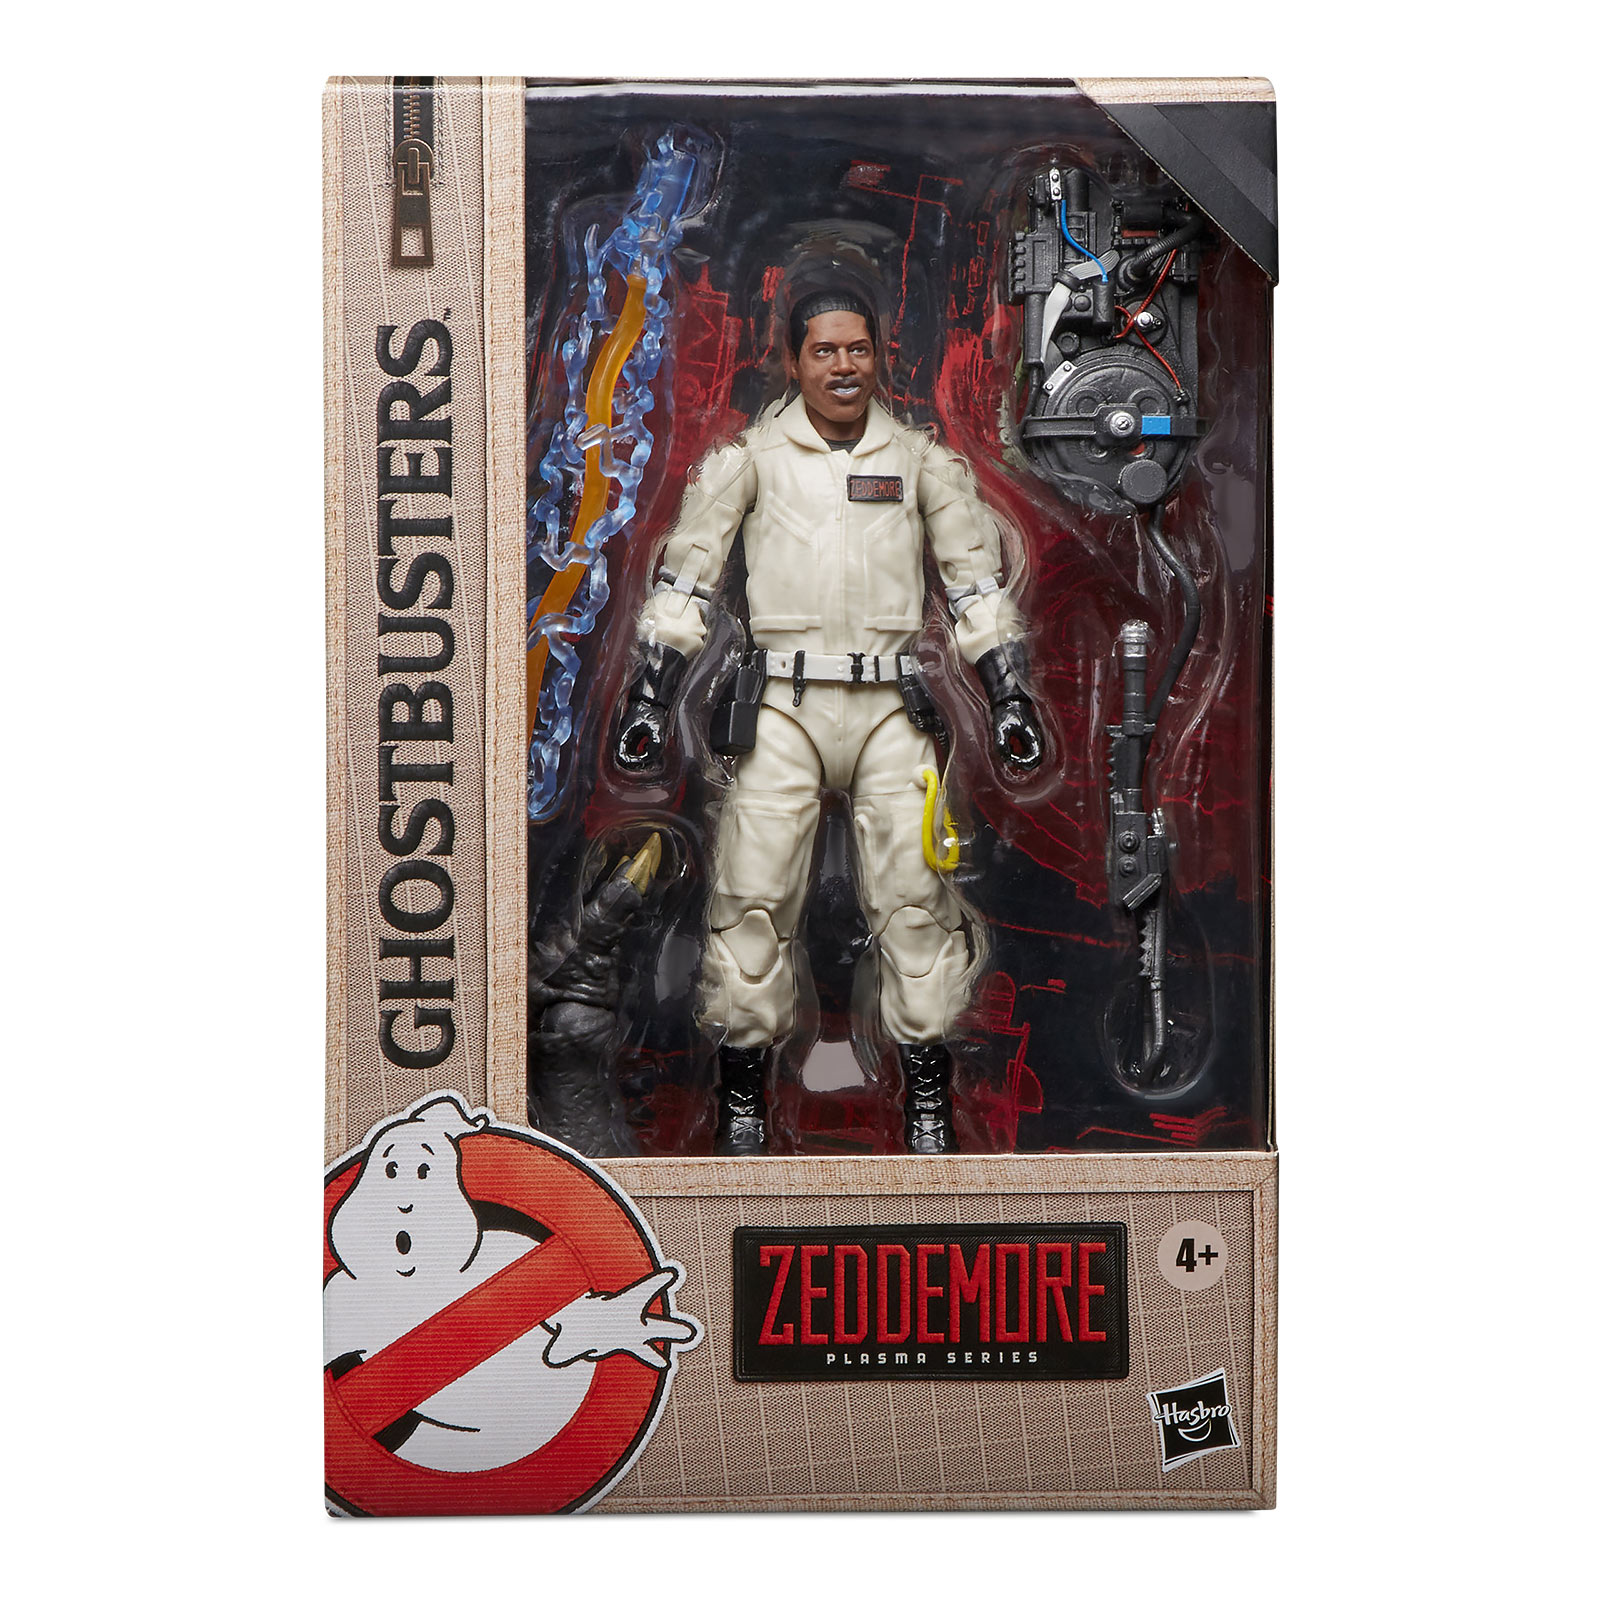 Ghostbusters - Figurine de Winston Zeddemore 15 cm